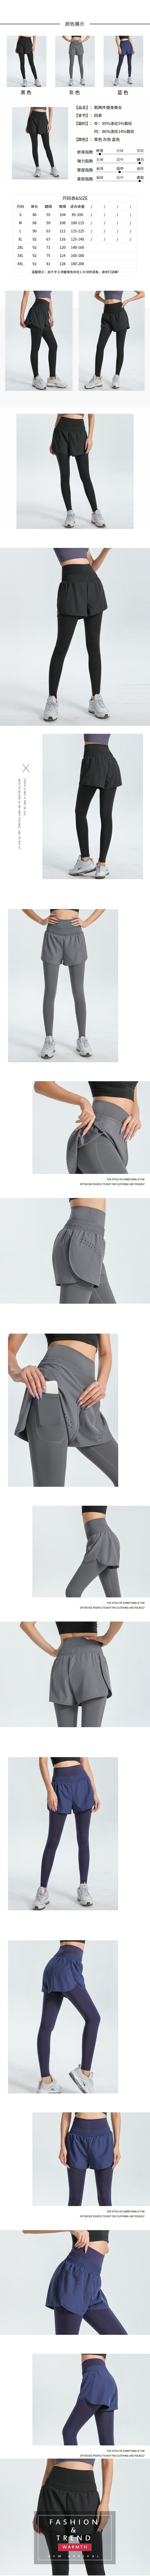 玩美衣櫃假兩件式高腰速乾跑步運動休閒緊身褲S-4XL(共3色)